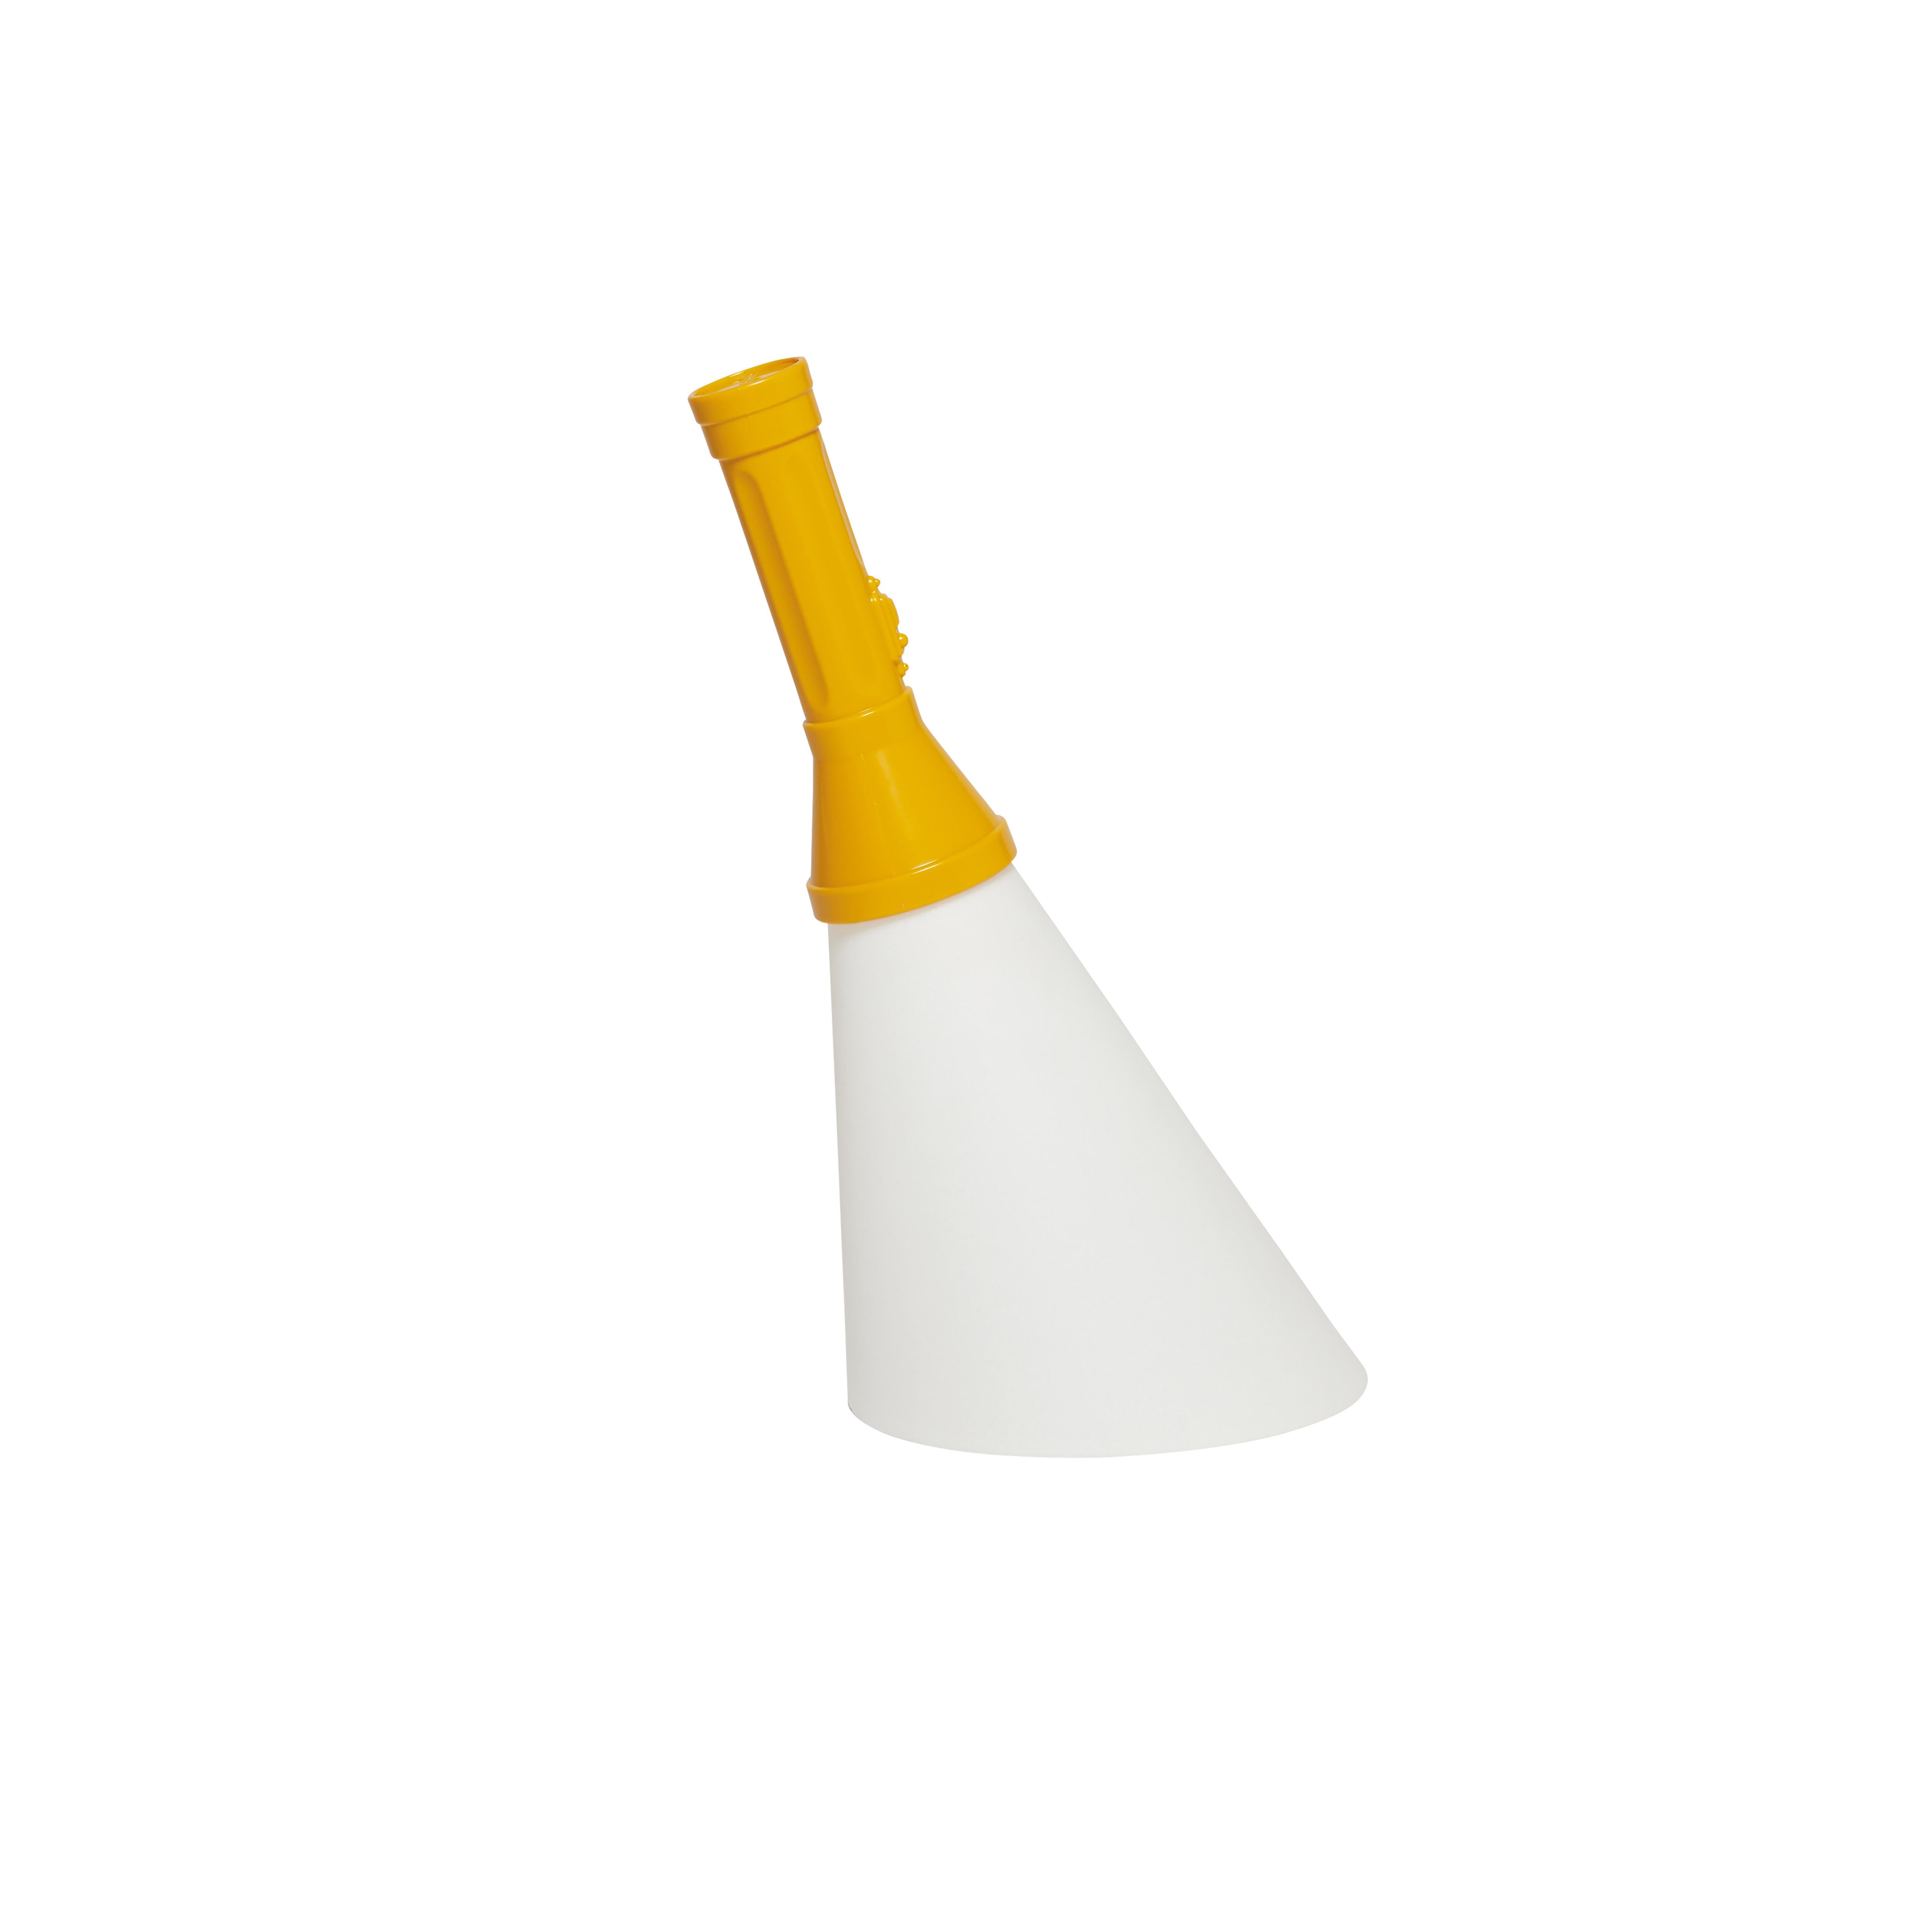 En vente : Yellow (Amber) Lampe de bureau moderne Flashlight noire, violette, rouge, orange, jaune, verte et blanche